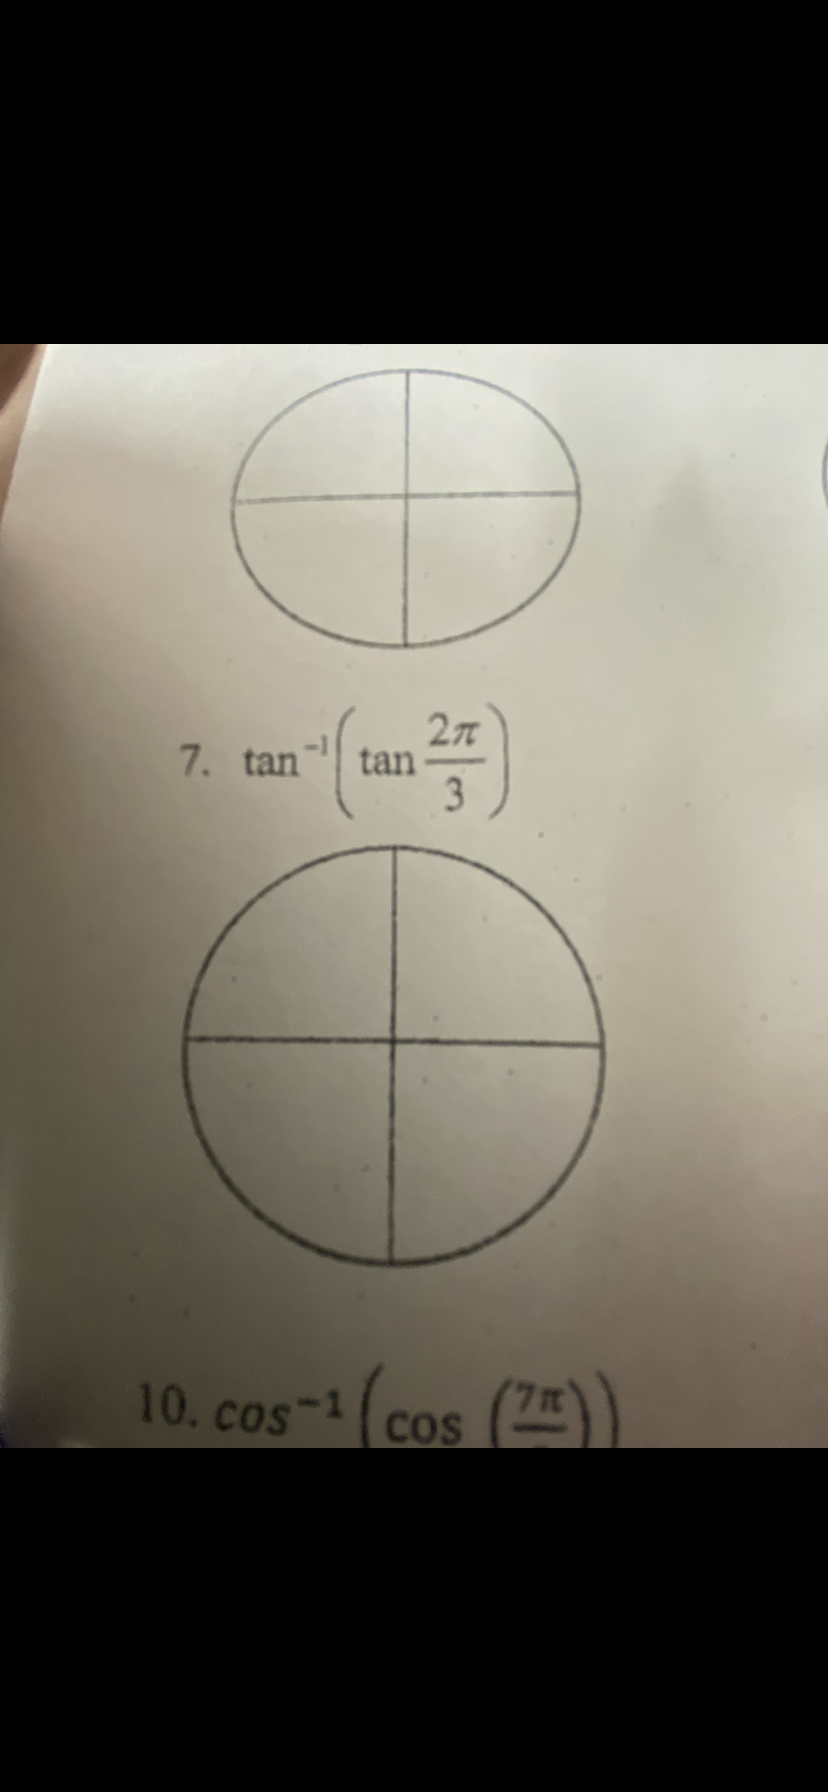 7. tan tan
2π
3
10. cos-1 (cos
(72))